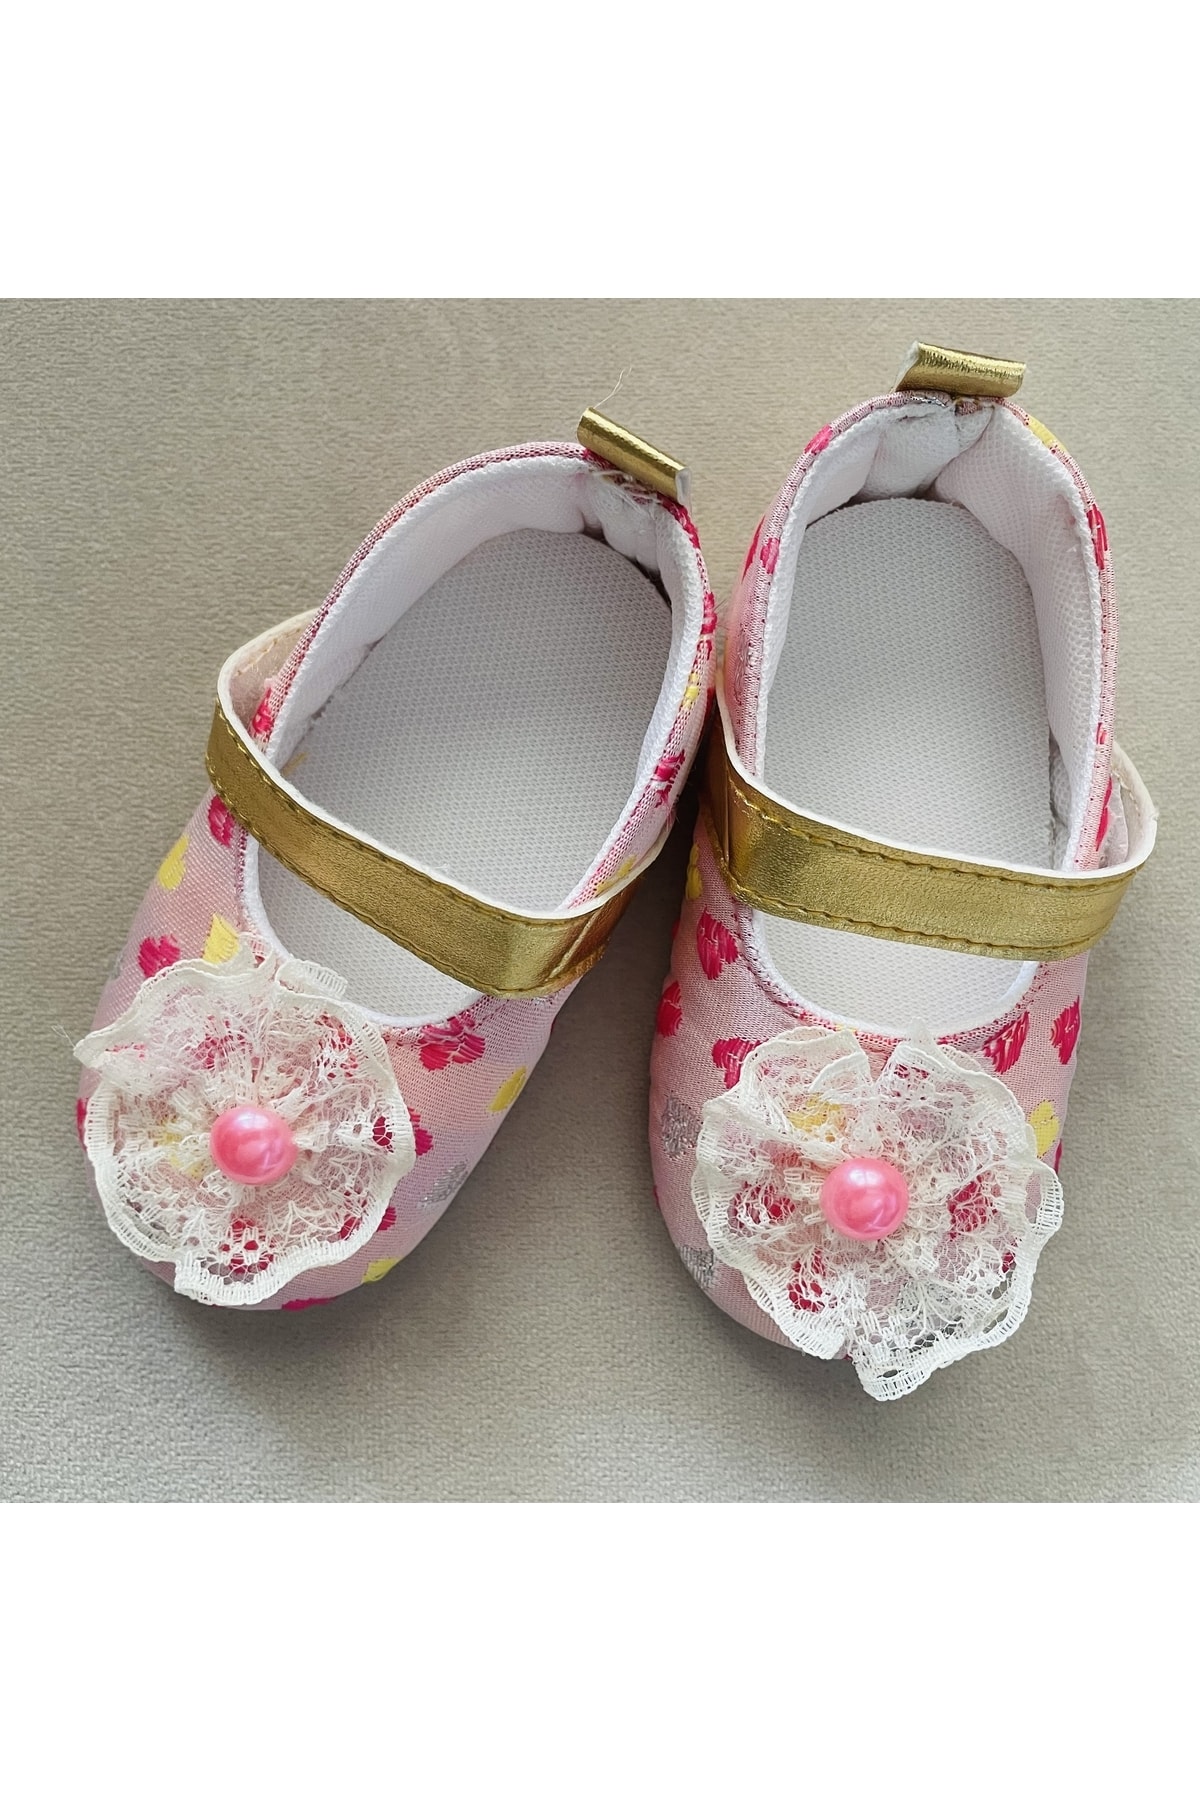 SANTRALBEBE Kız Çocuk 17-18-19 Numara Çiçekli Ayakkabı